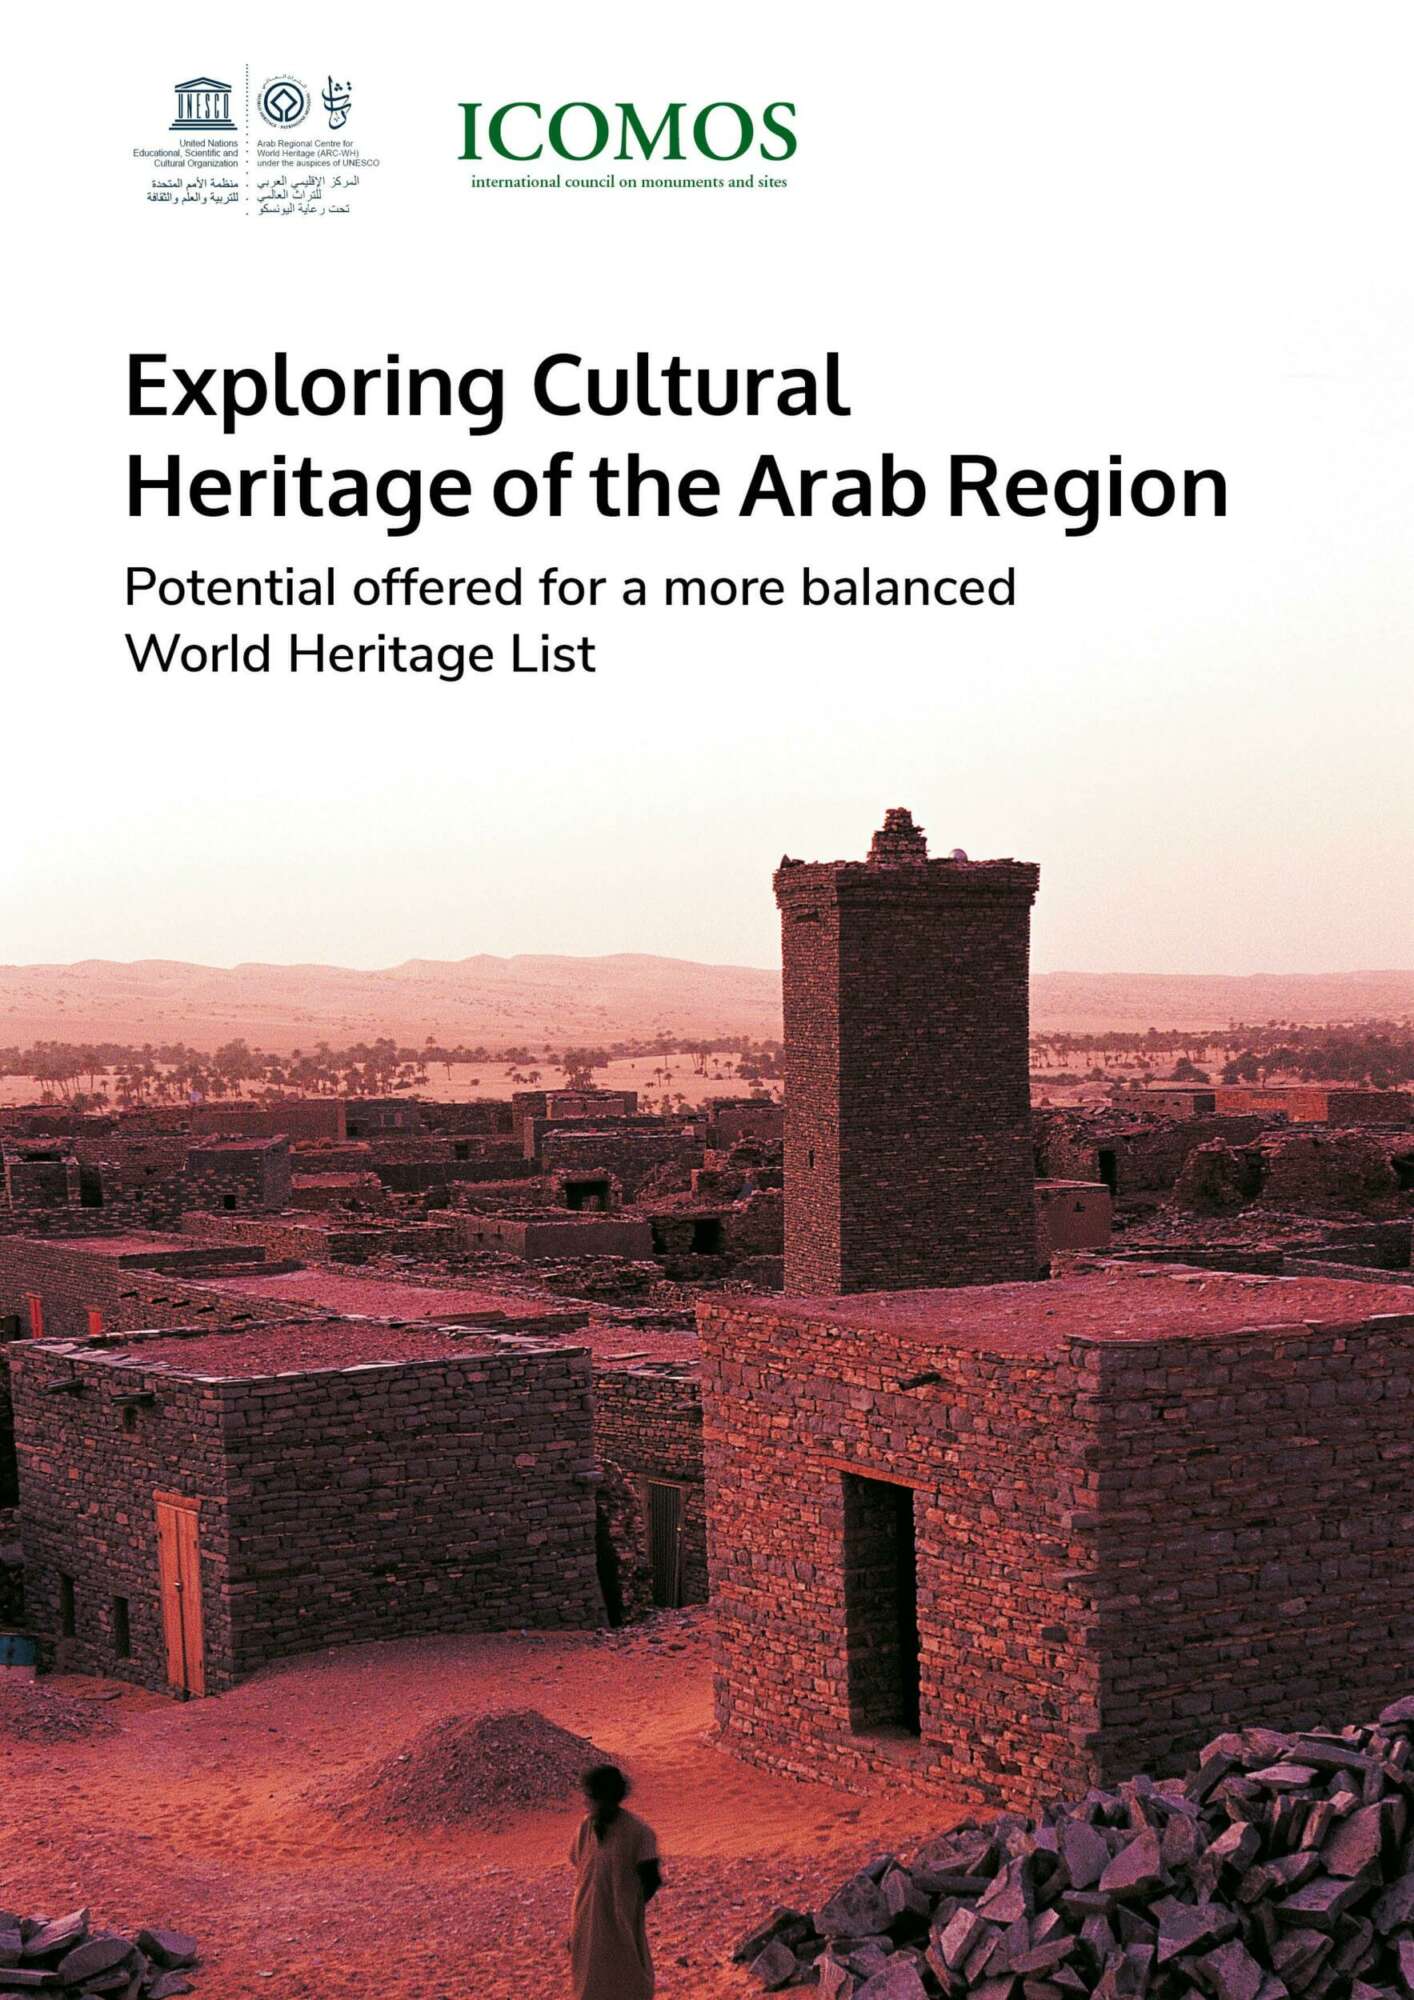 استكشاف التراث الثقافي في المنطقة العربية: إمكانيات مقدَّمة لقائمة تراث عالمي أكثر توازناً